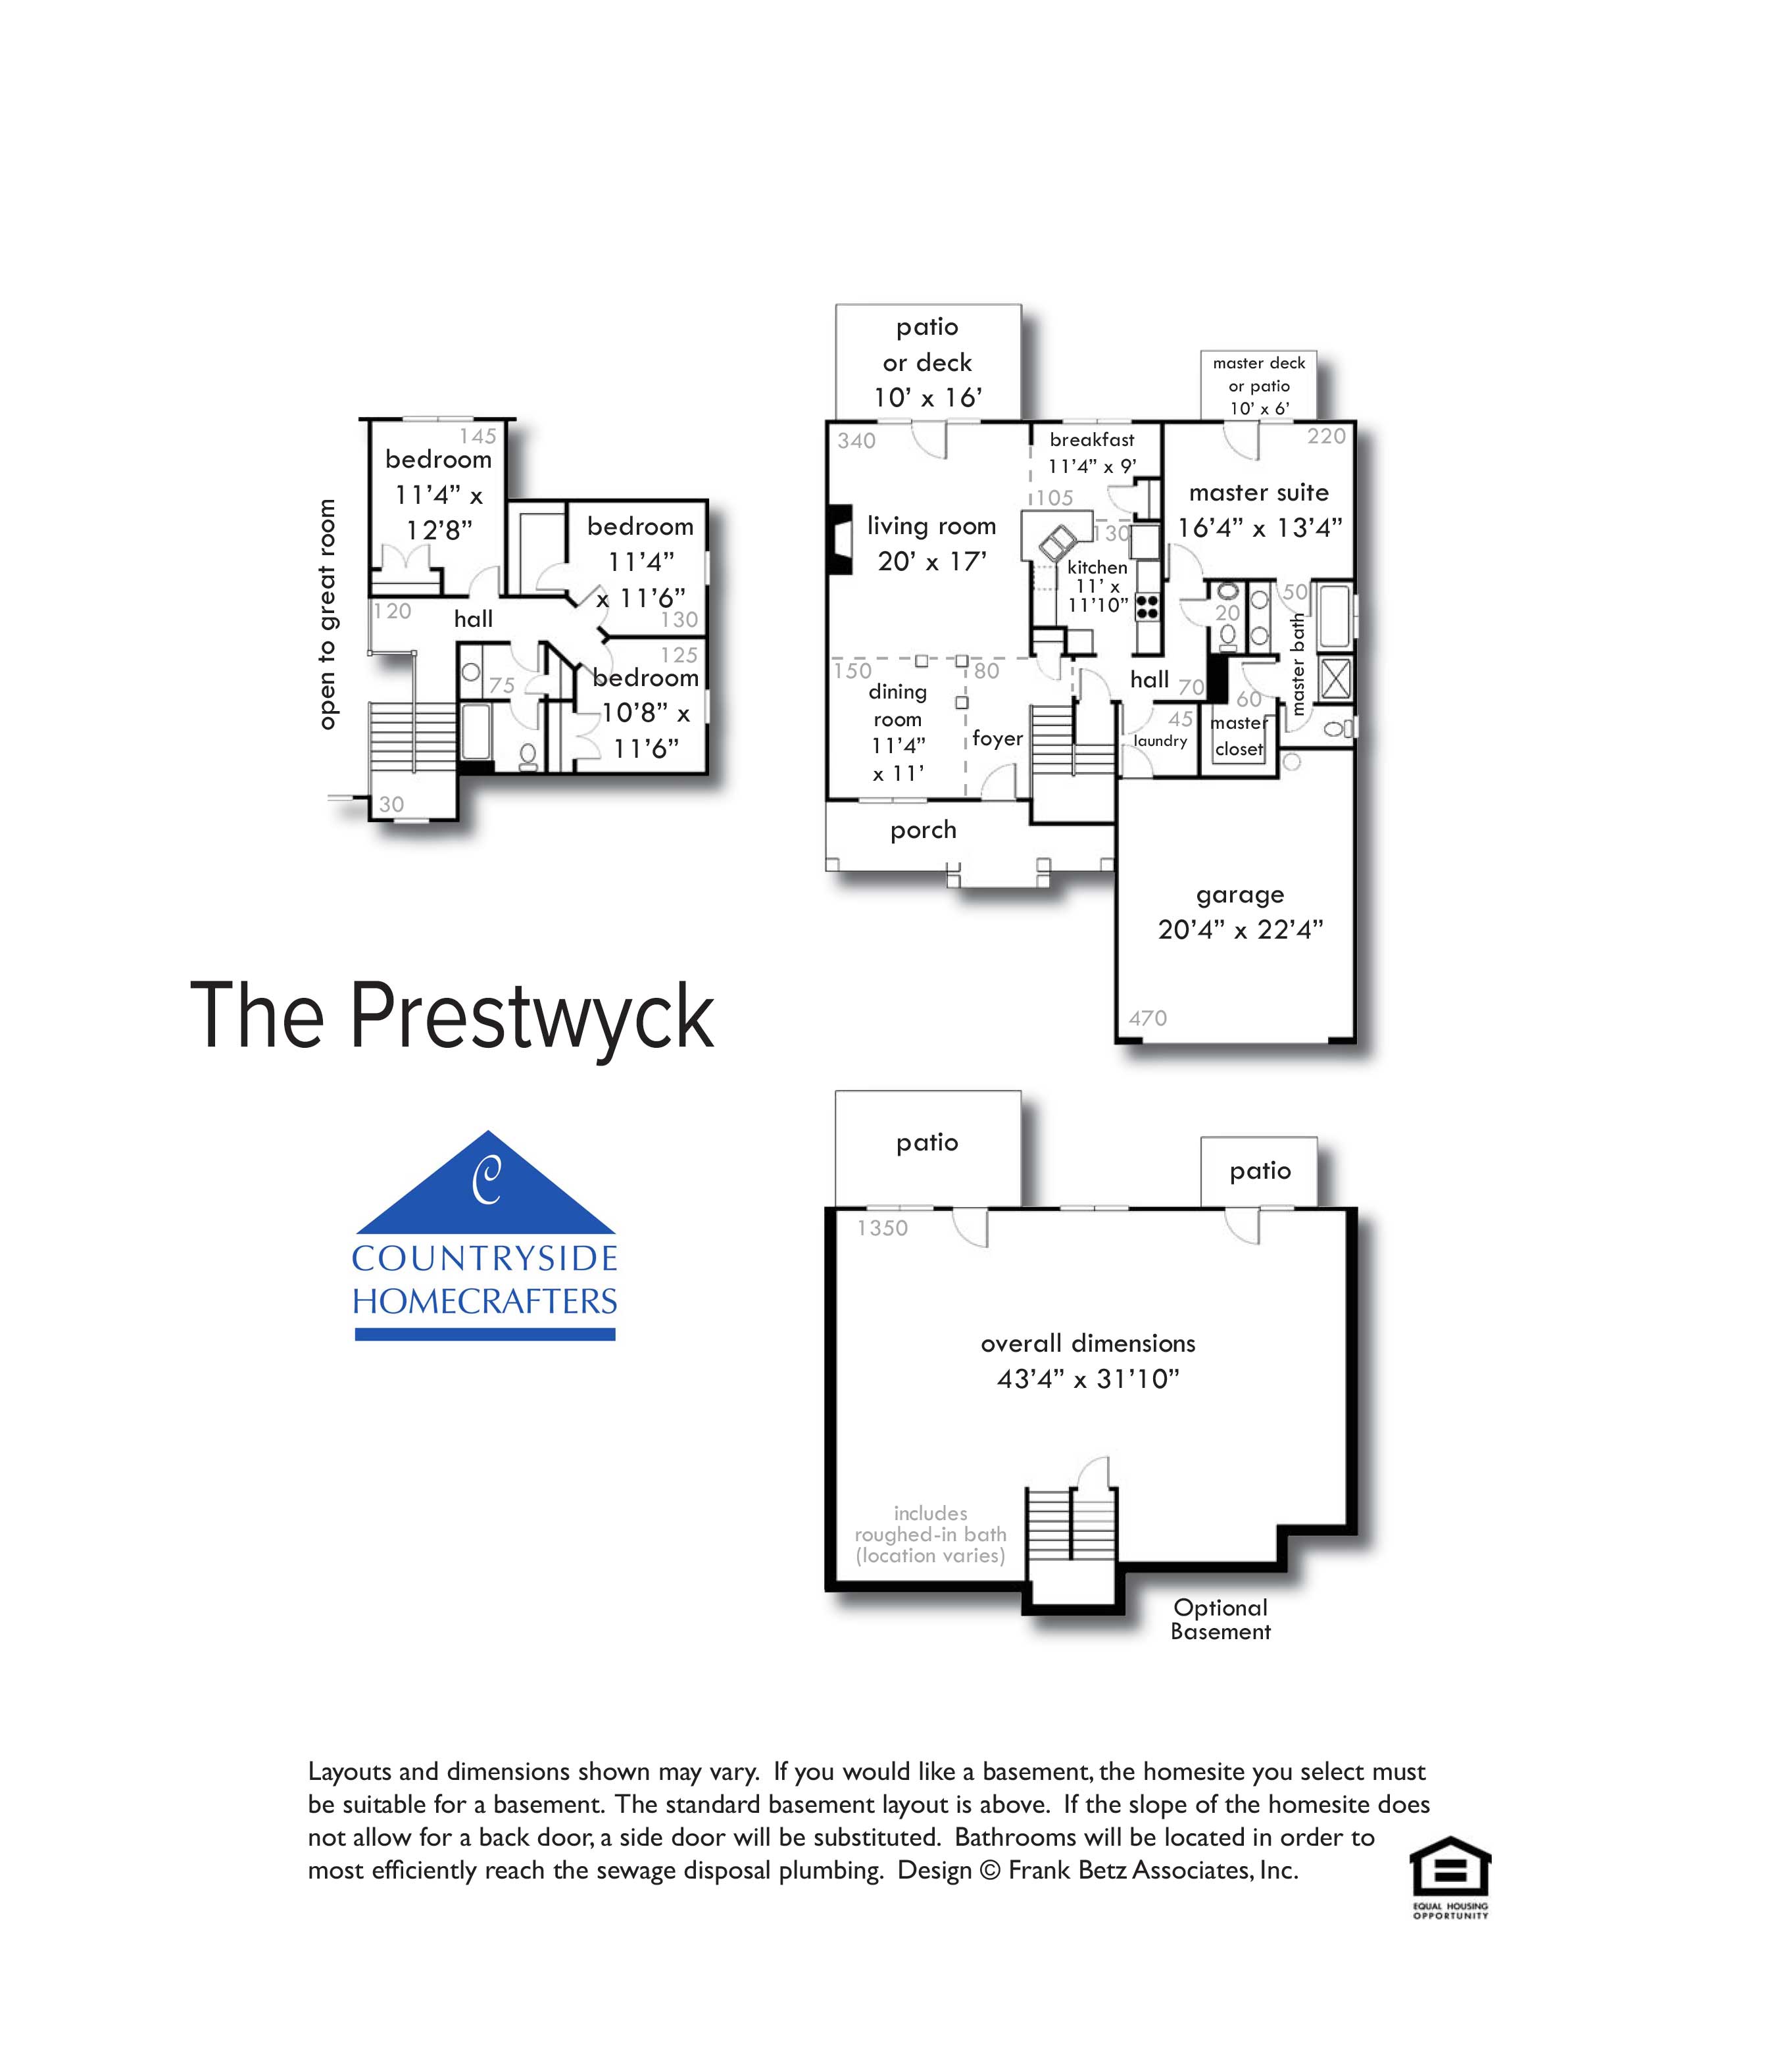 The Prestwyck